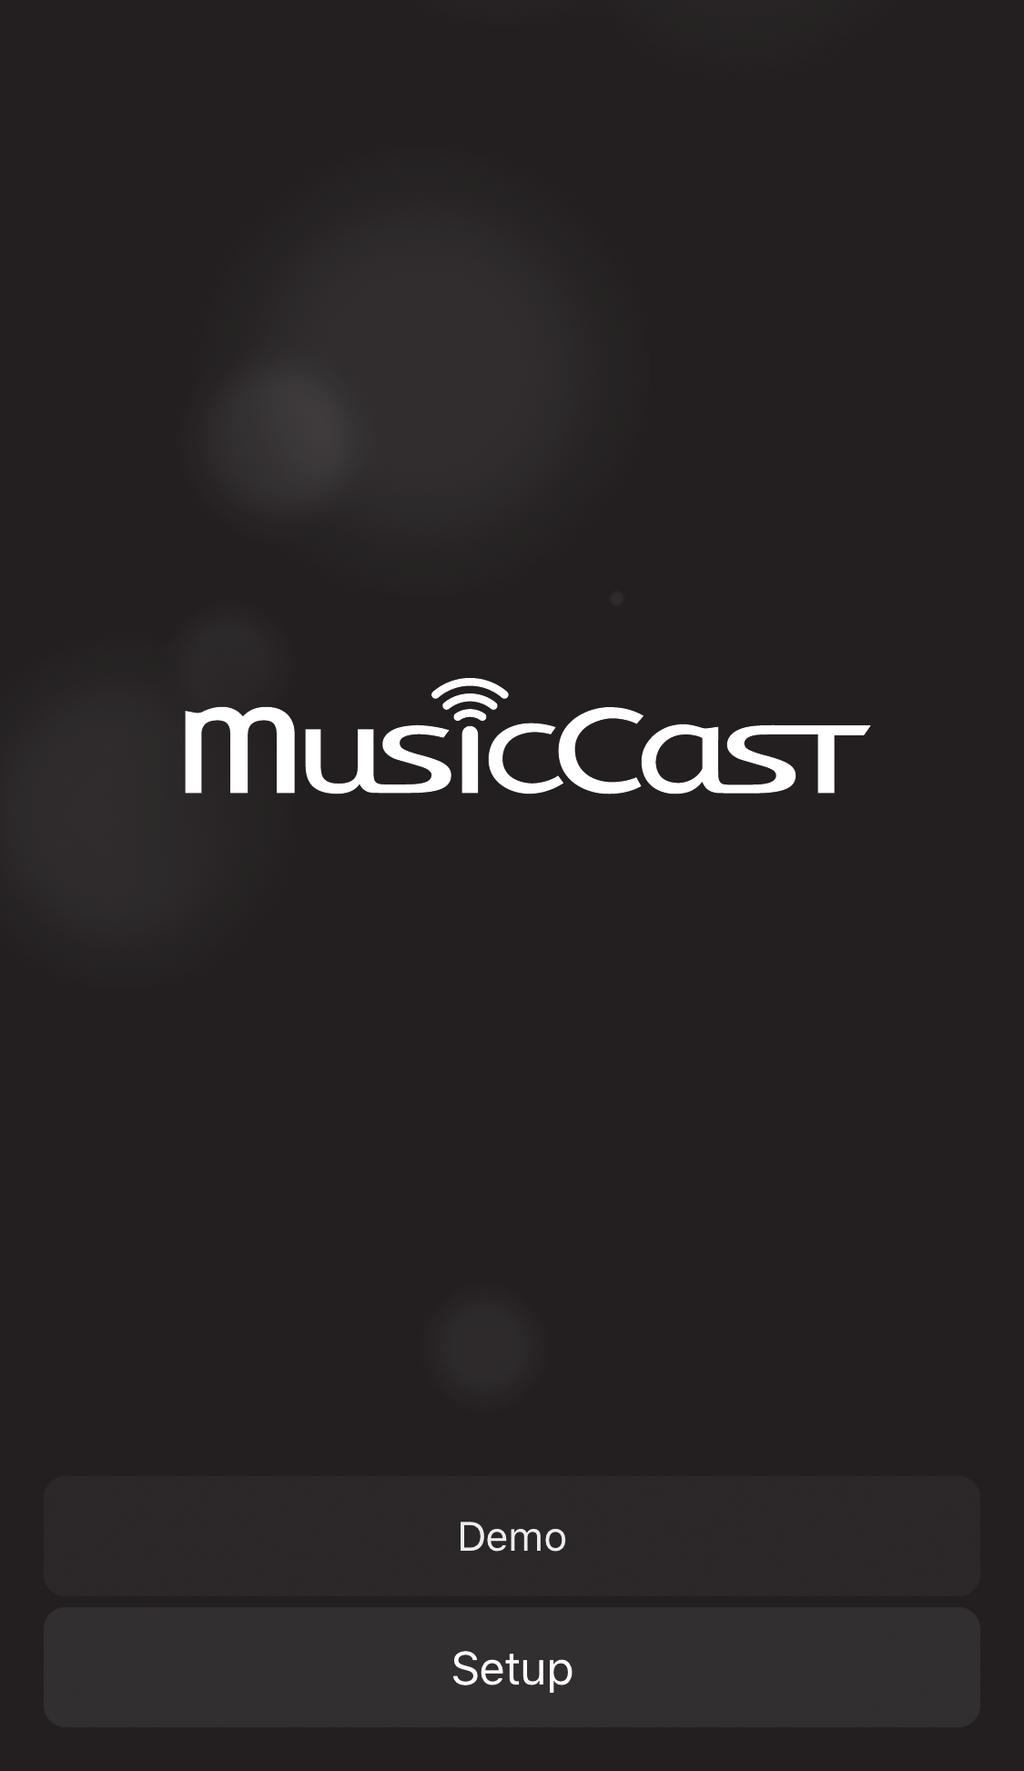 무선네트워크연결 기기를무선라우터 (AP) 에연결하여네트워크를사용할수있습니다. 무선라우터 (AP) 연결에대한지침은다음을참조하십시오. - MusicCast CONTROLLER 앱사용 (p. 27) - MusicCast CONTROLLER 앱이외의연결방법사용 (p.